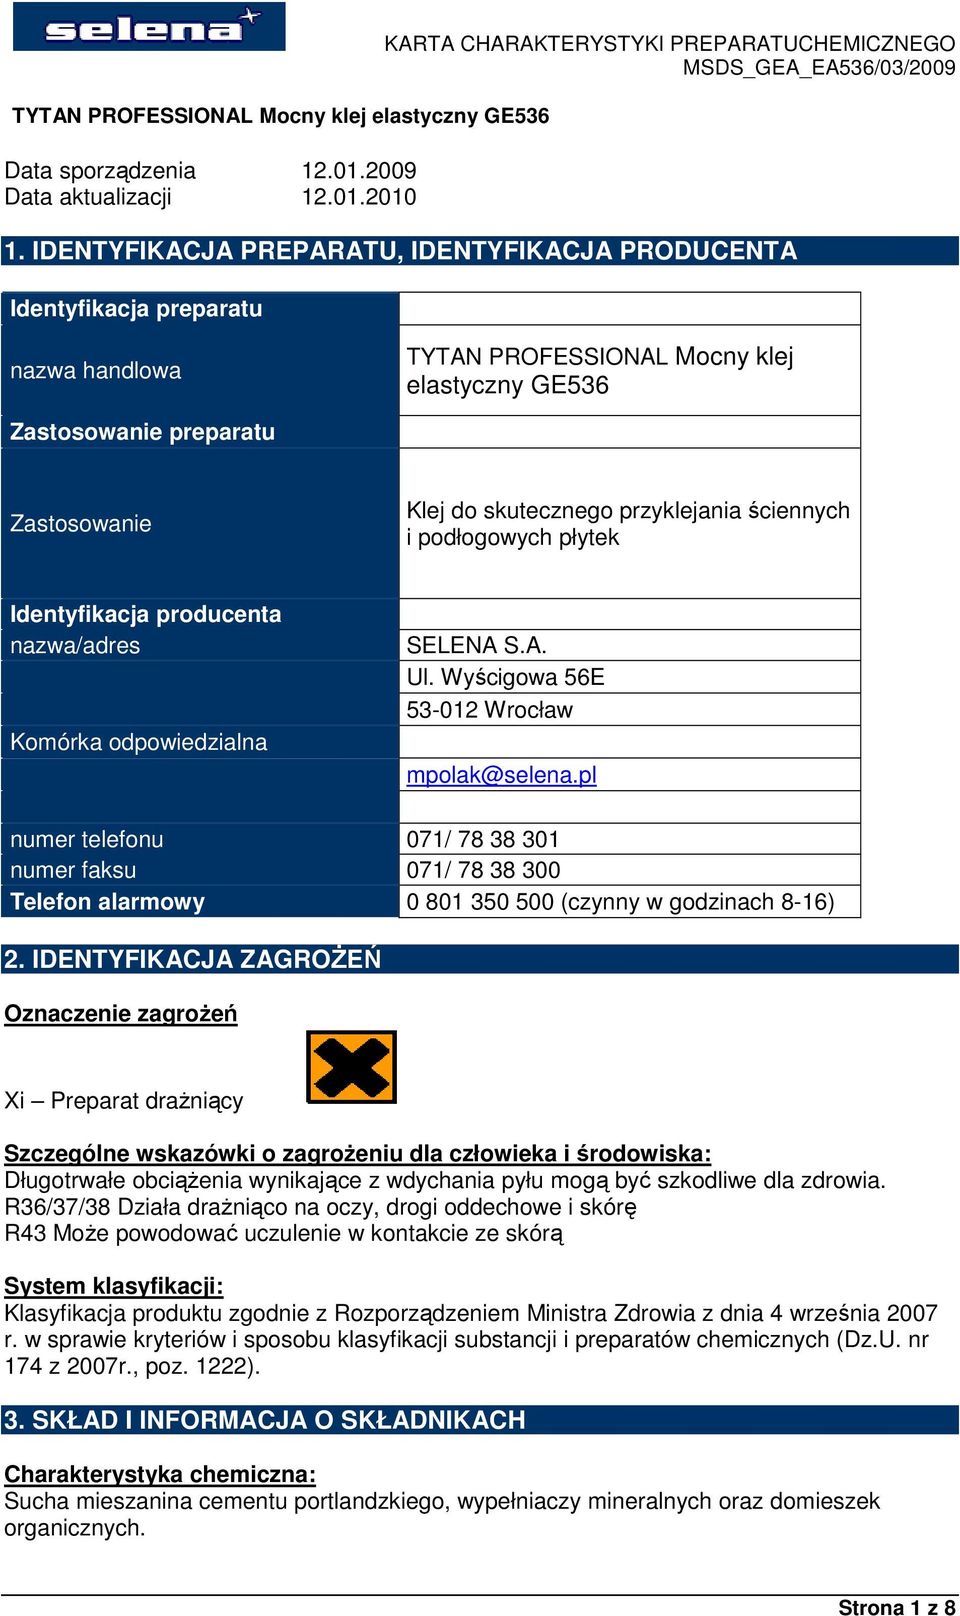 przyklejania ściennych i podłogowych płytek Identyfikacja producenta nazwa/adres Komórka odpowiedzialna SELENA S.A. Ul. Wyścigowa 56E 53-012 Wrocław mpolak@selena.